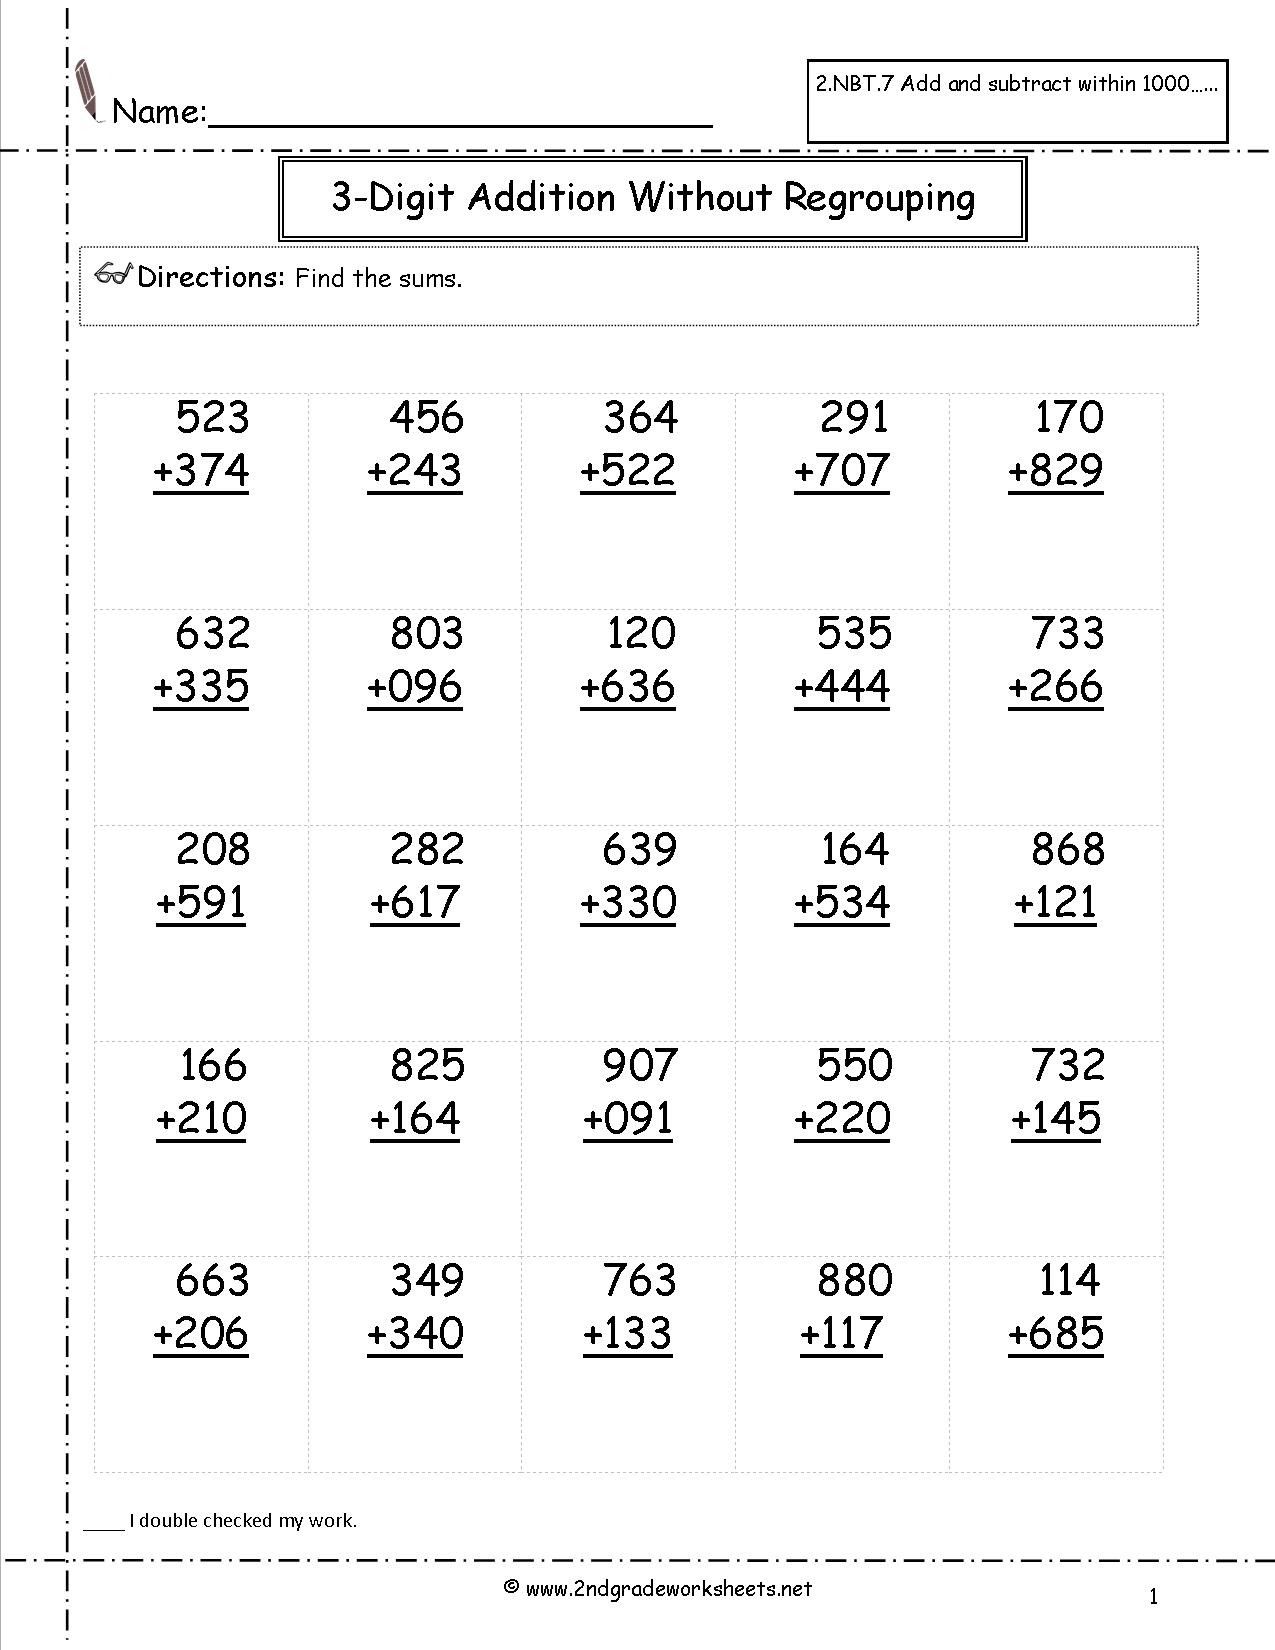 2-Digit Addition Worksheets 2nd Grade Image